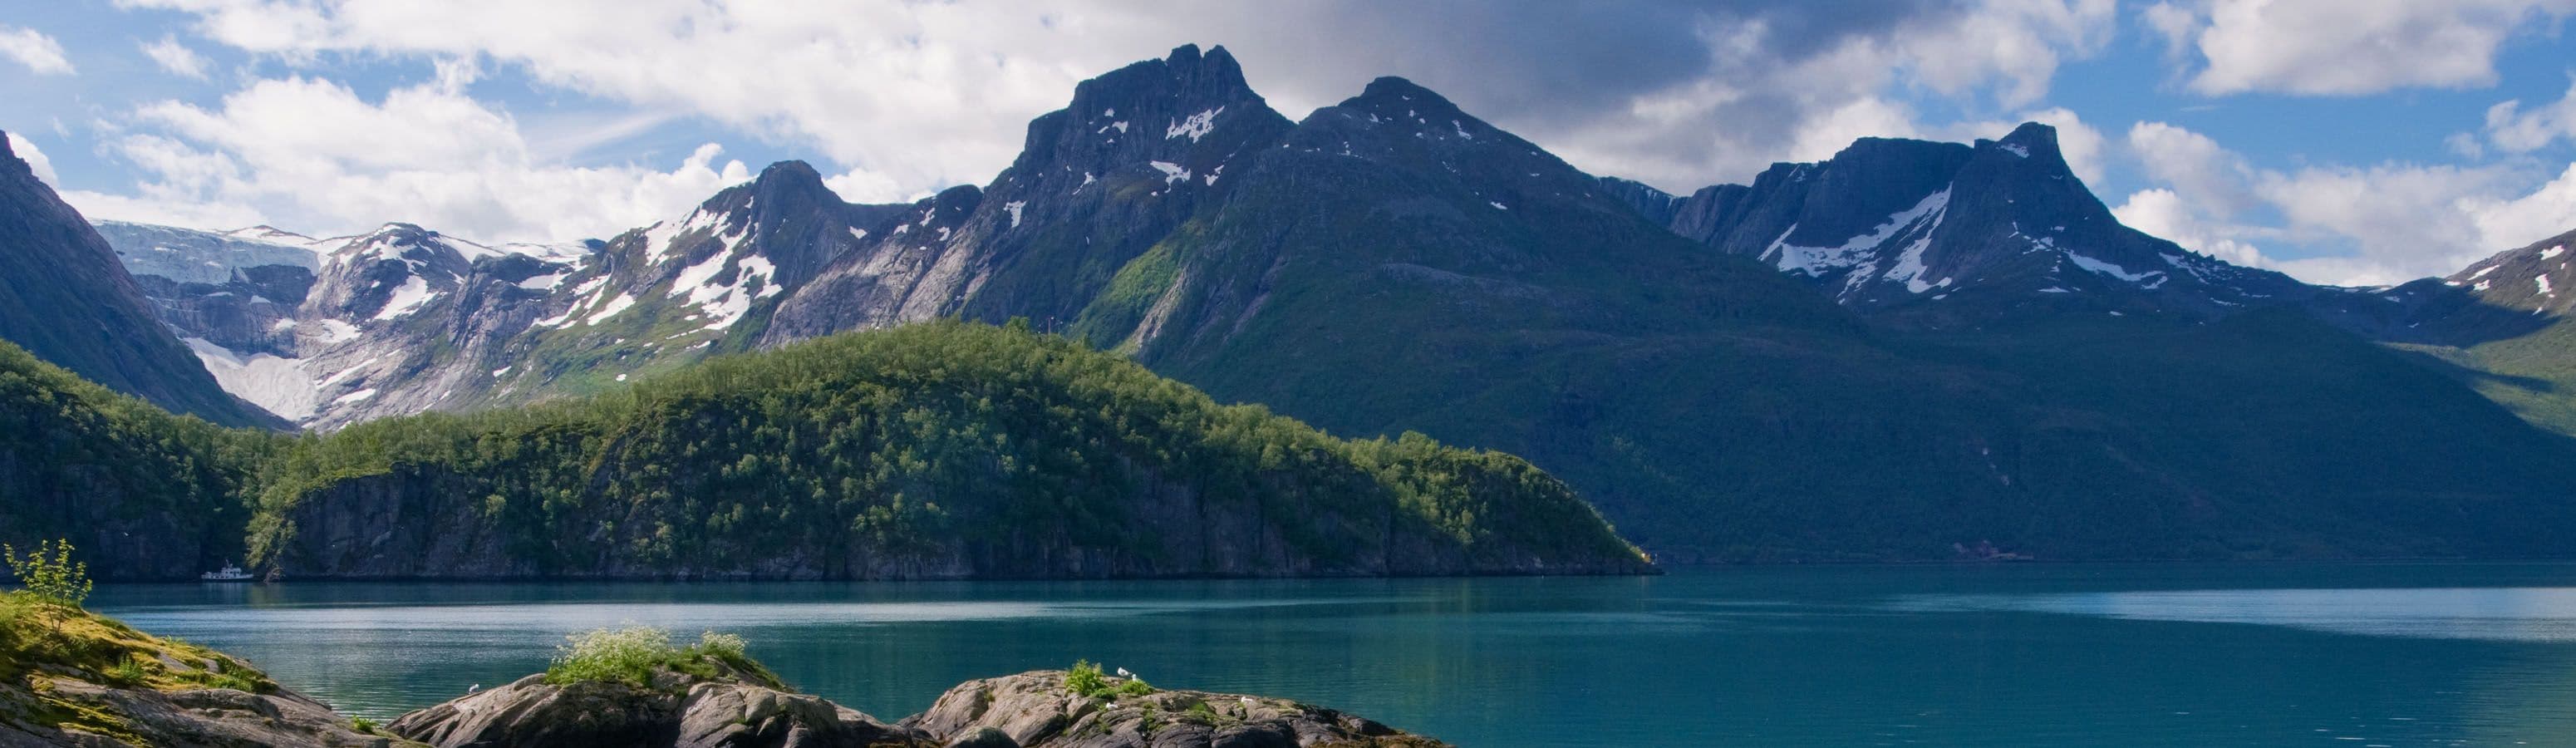 I luoghi di pesca più belli della Norvegia